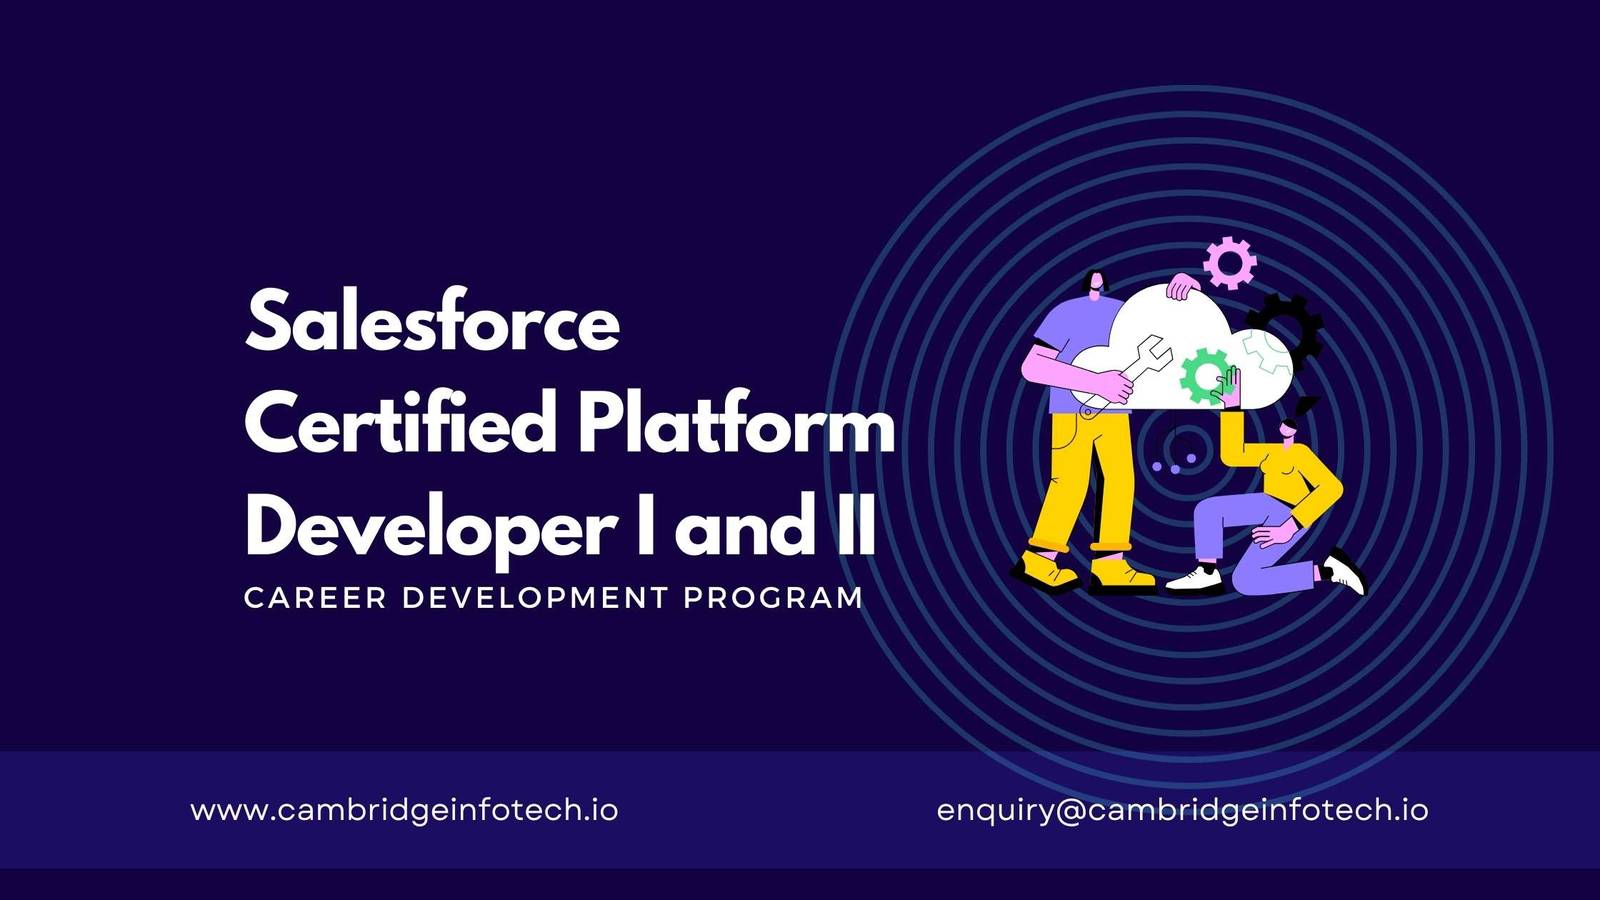 Salesforce Certified Platform Developer - Cambridge Infotech